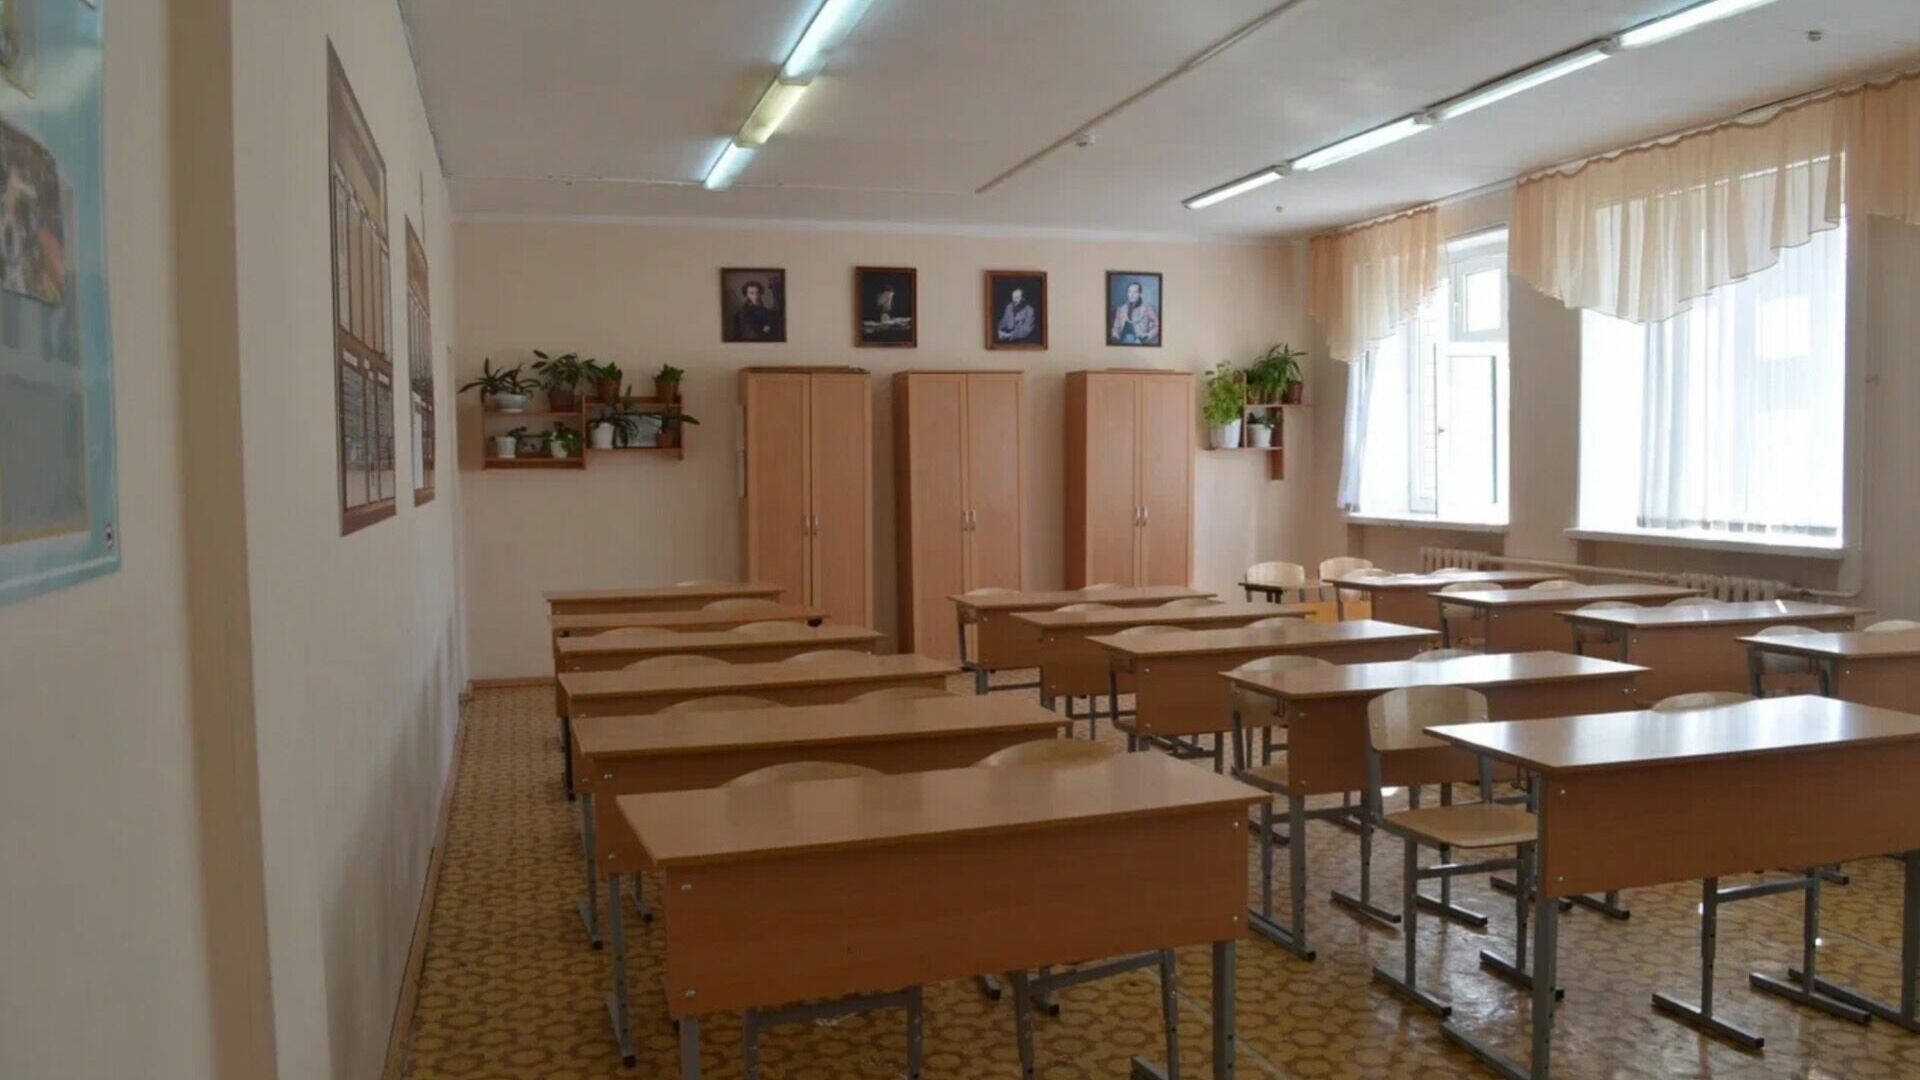 Татарстанцы продолжат конфликт с администрацией из-за школы